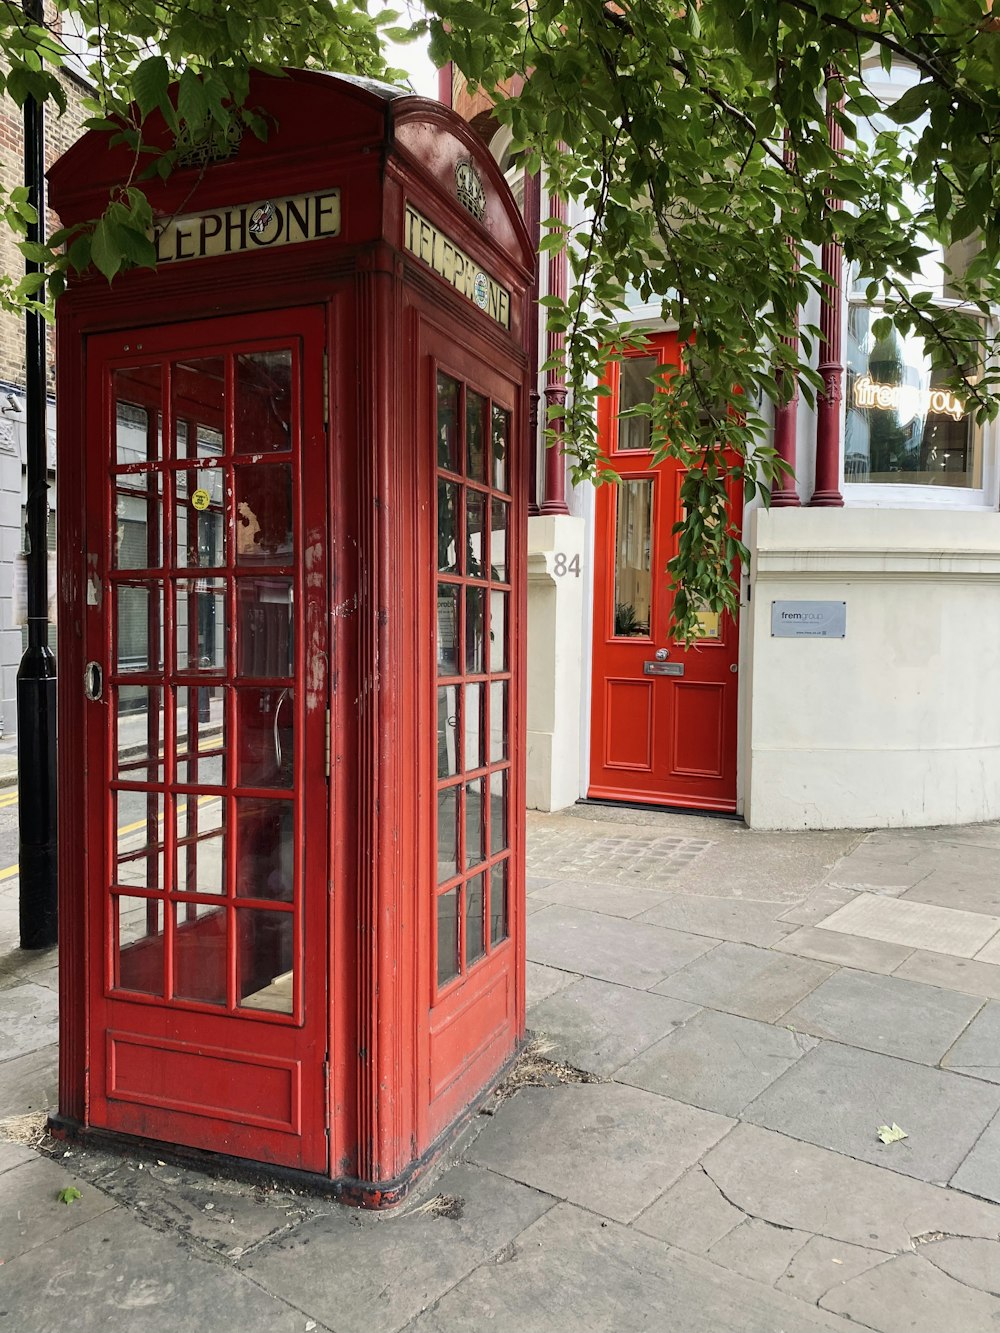 Eine rote Telefonzelle, die am Straßenrand sitzt